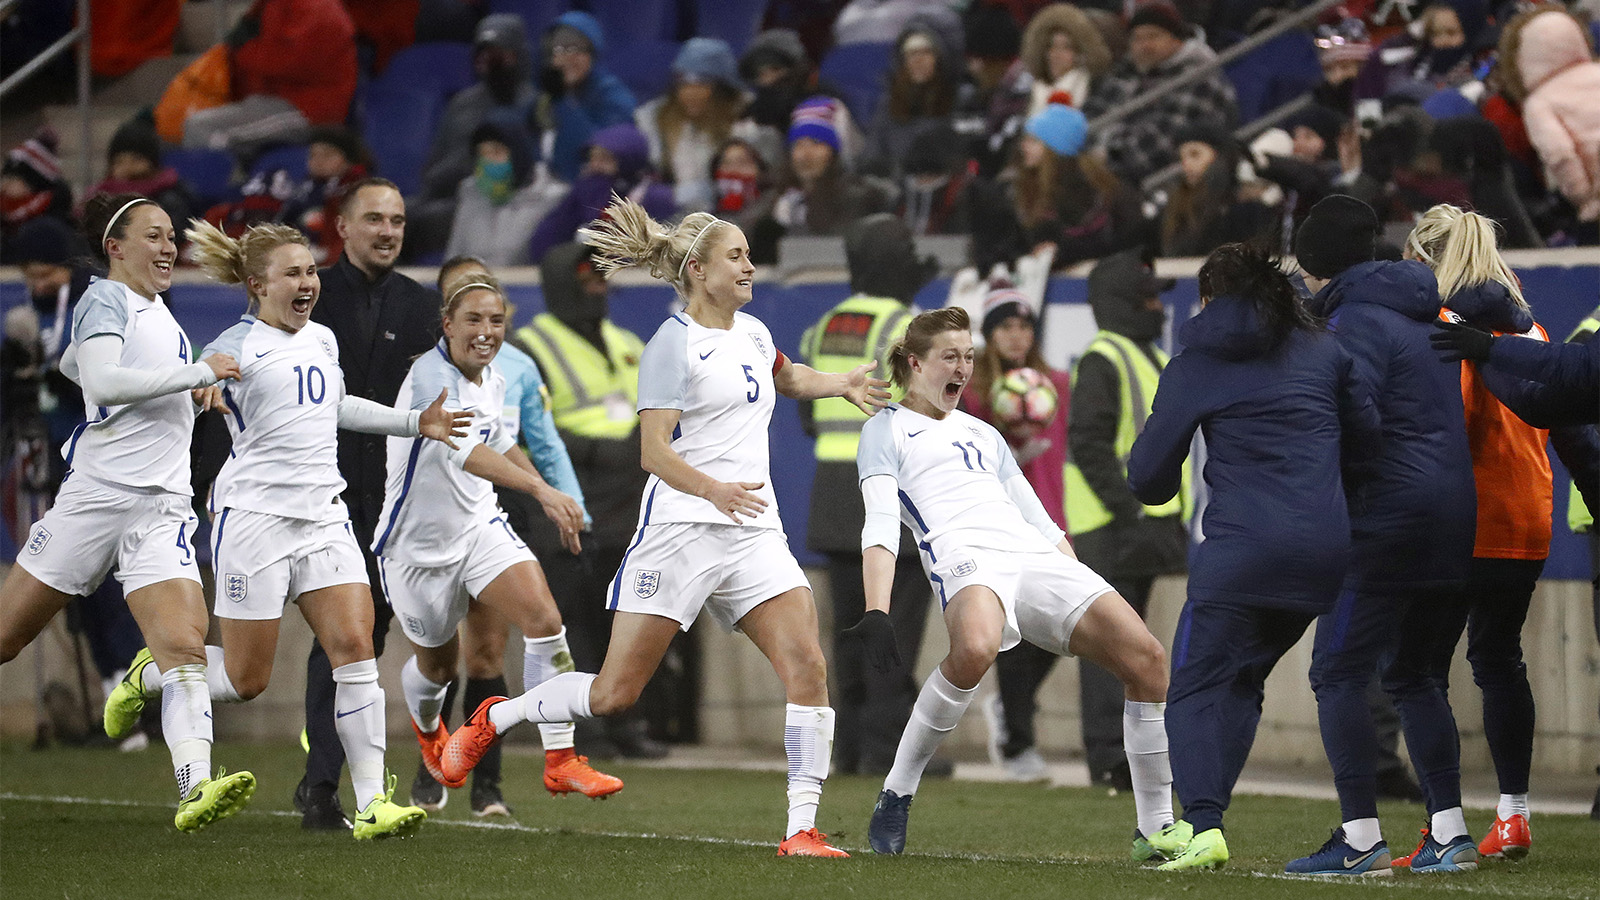 יש לאן סיבה לשמוח, אנגליה עלתה לרבע גמר היורו נשים. בתמונה: שחקניות נבחרת אנגליה חוגגות שער במשחק ידידות. מרץ 17 (צילום: AP Photo/Julio Cortez)